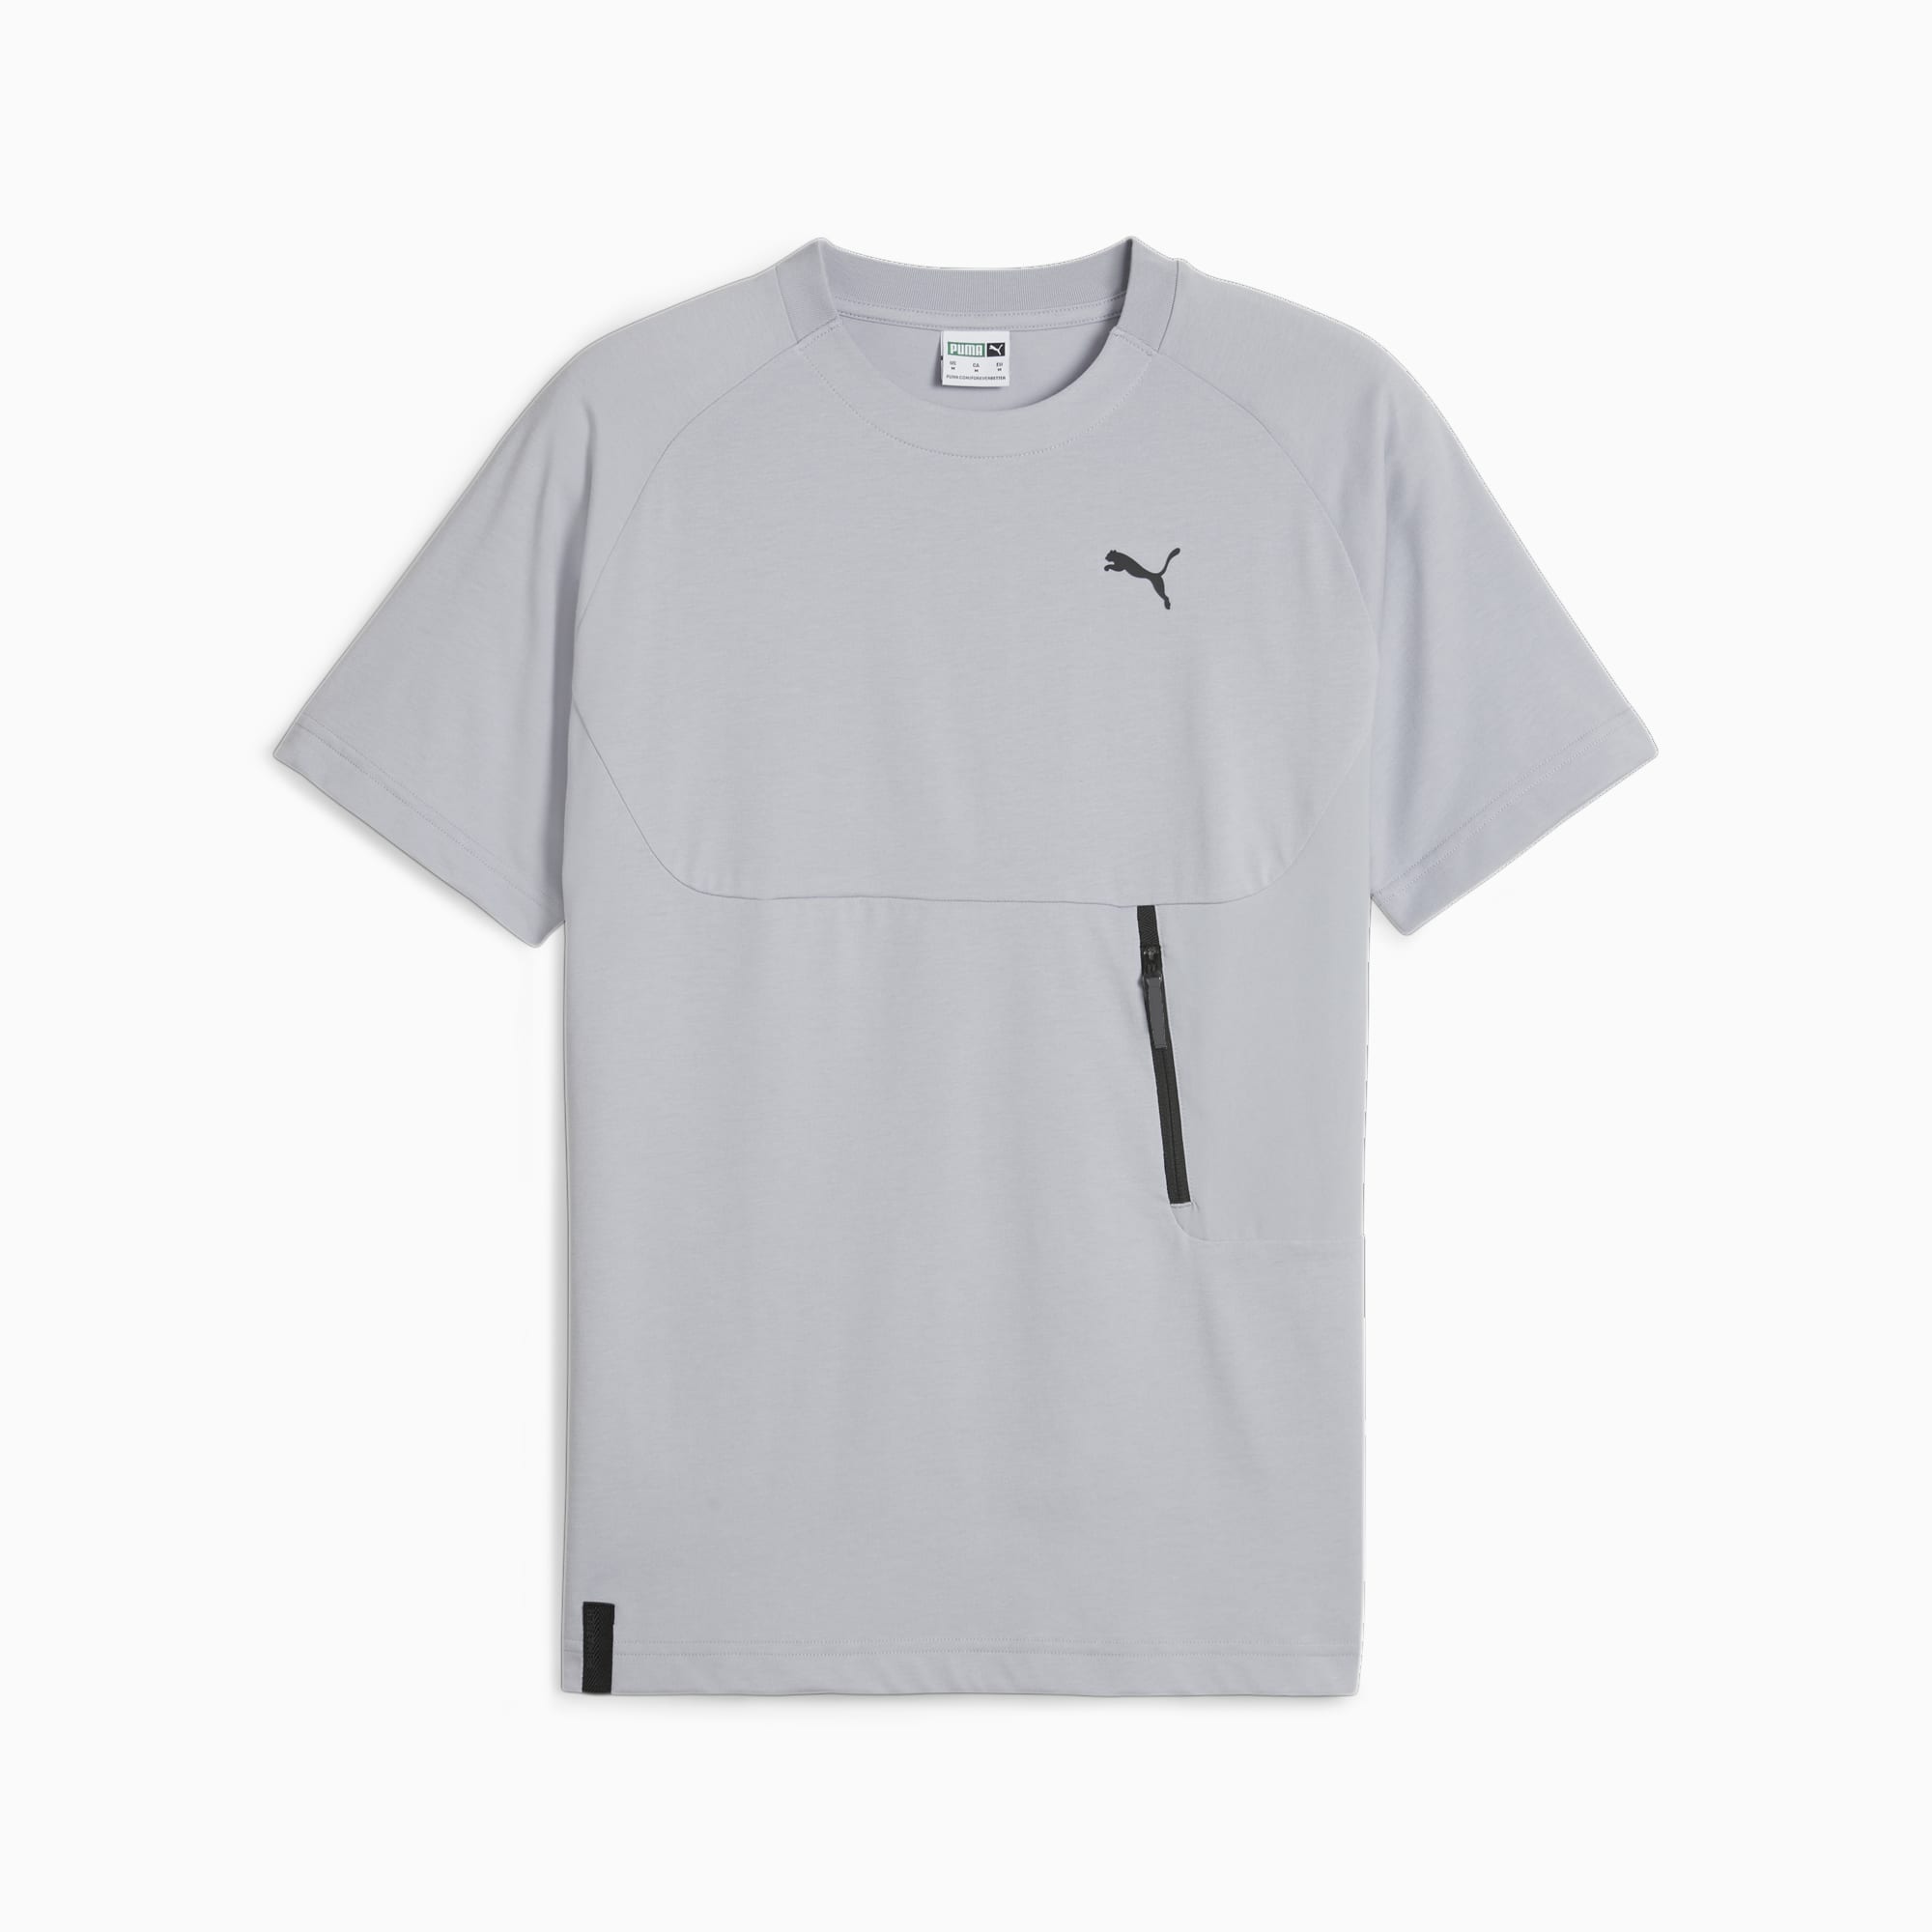 PUMATECH T-Shirt Mit Tasche Herren, Grau, Größe: S, Kleidung